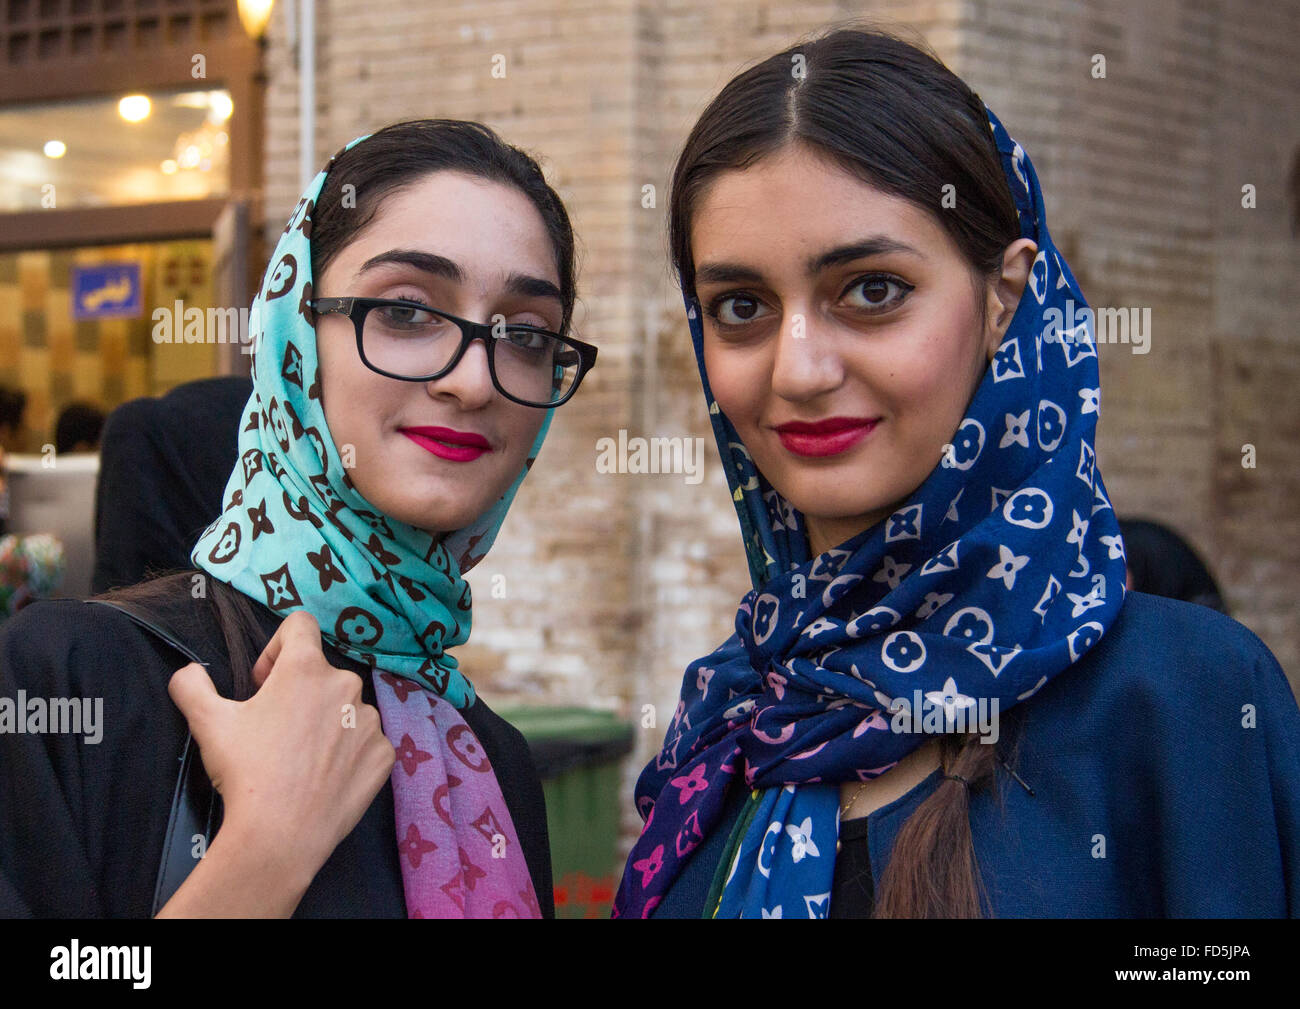 junge Iranerinnen mit Louis Vuitton Schals, Central District, Teheran, Iran  Stockfotografie - Alamy